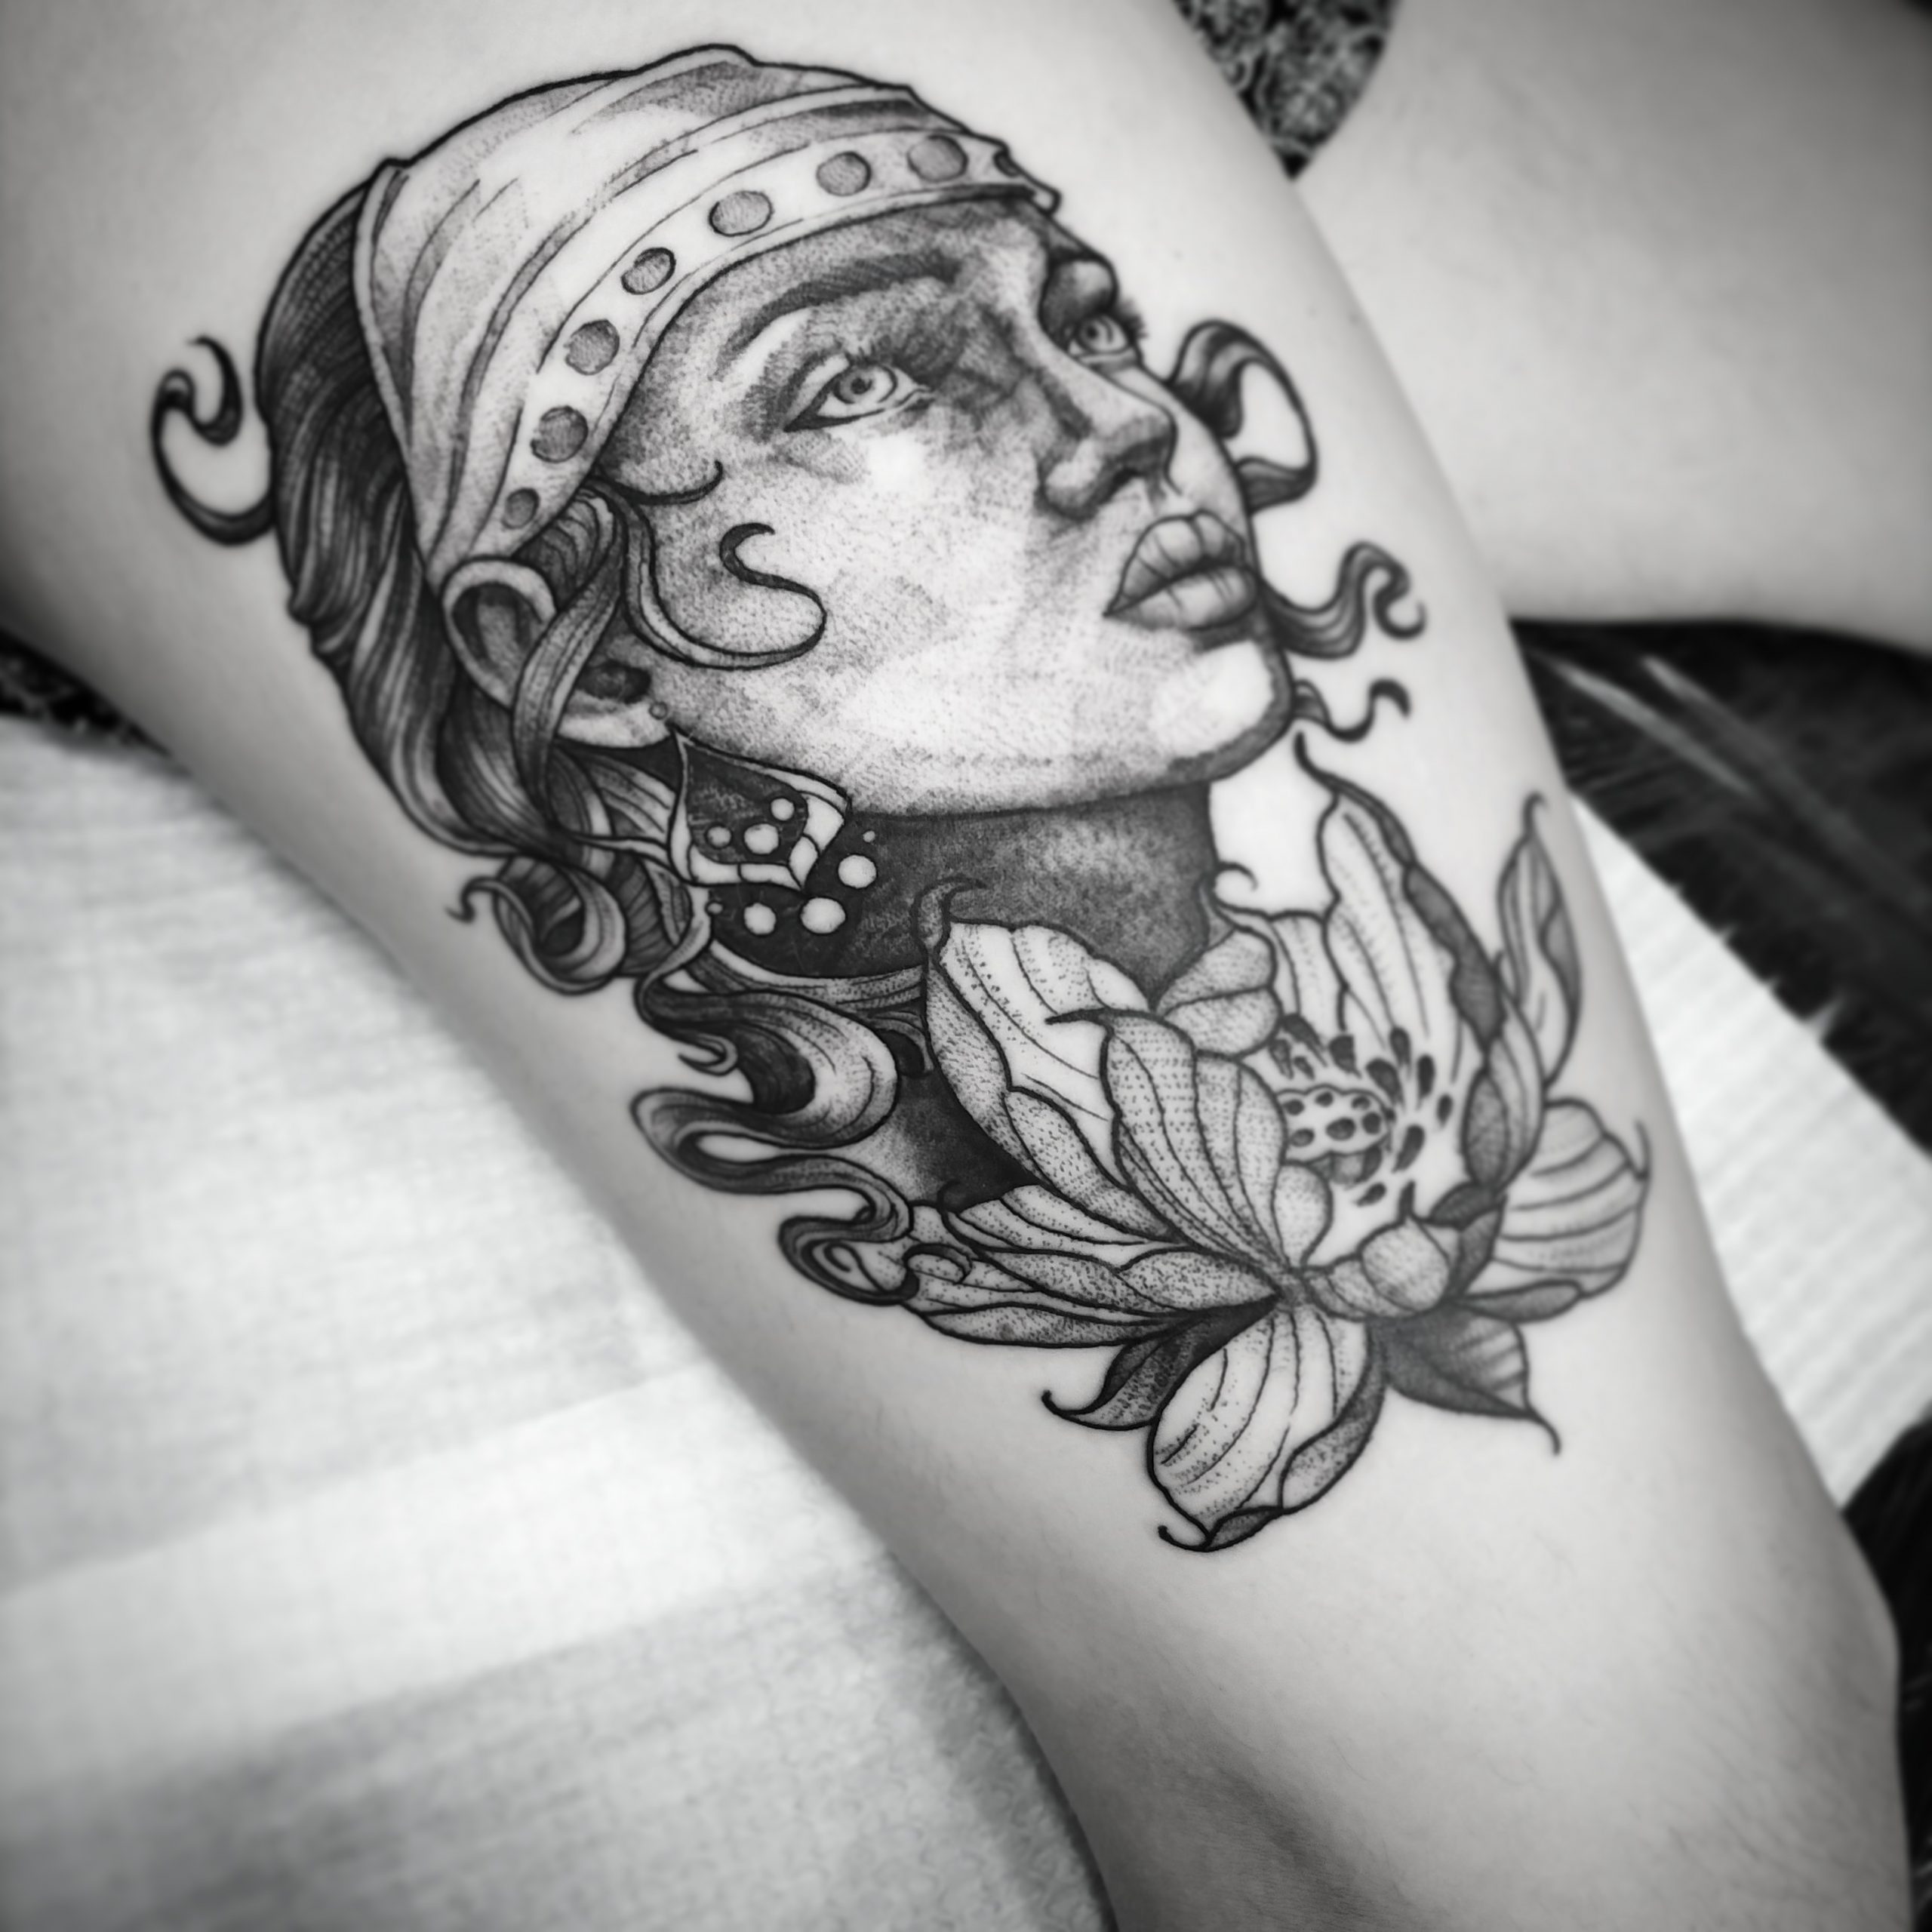 Female-gypsy-with-flower-tattoo